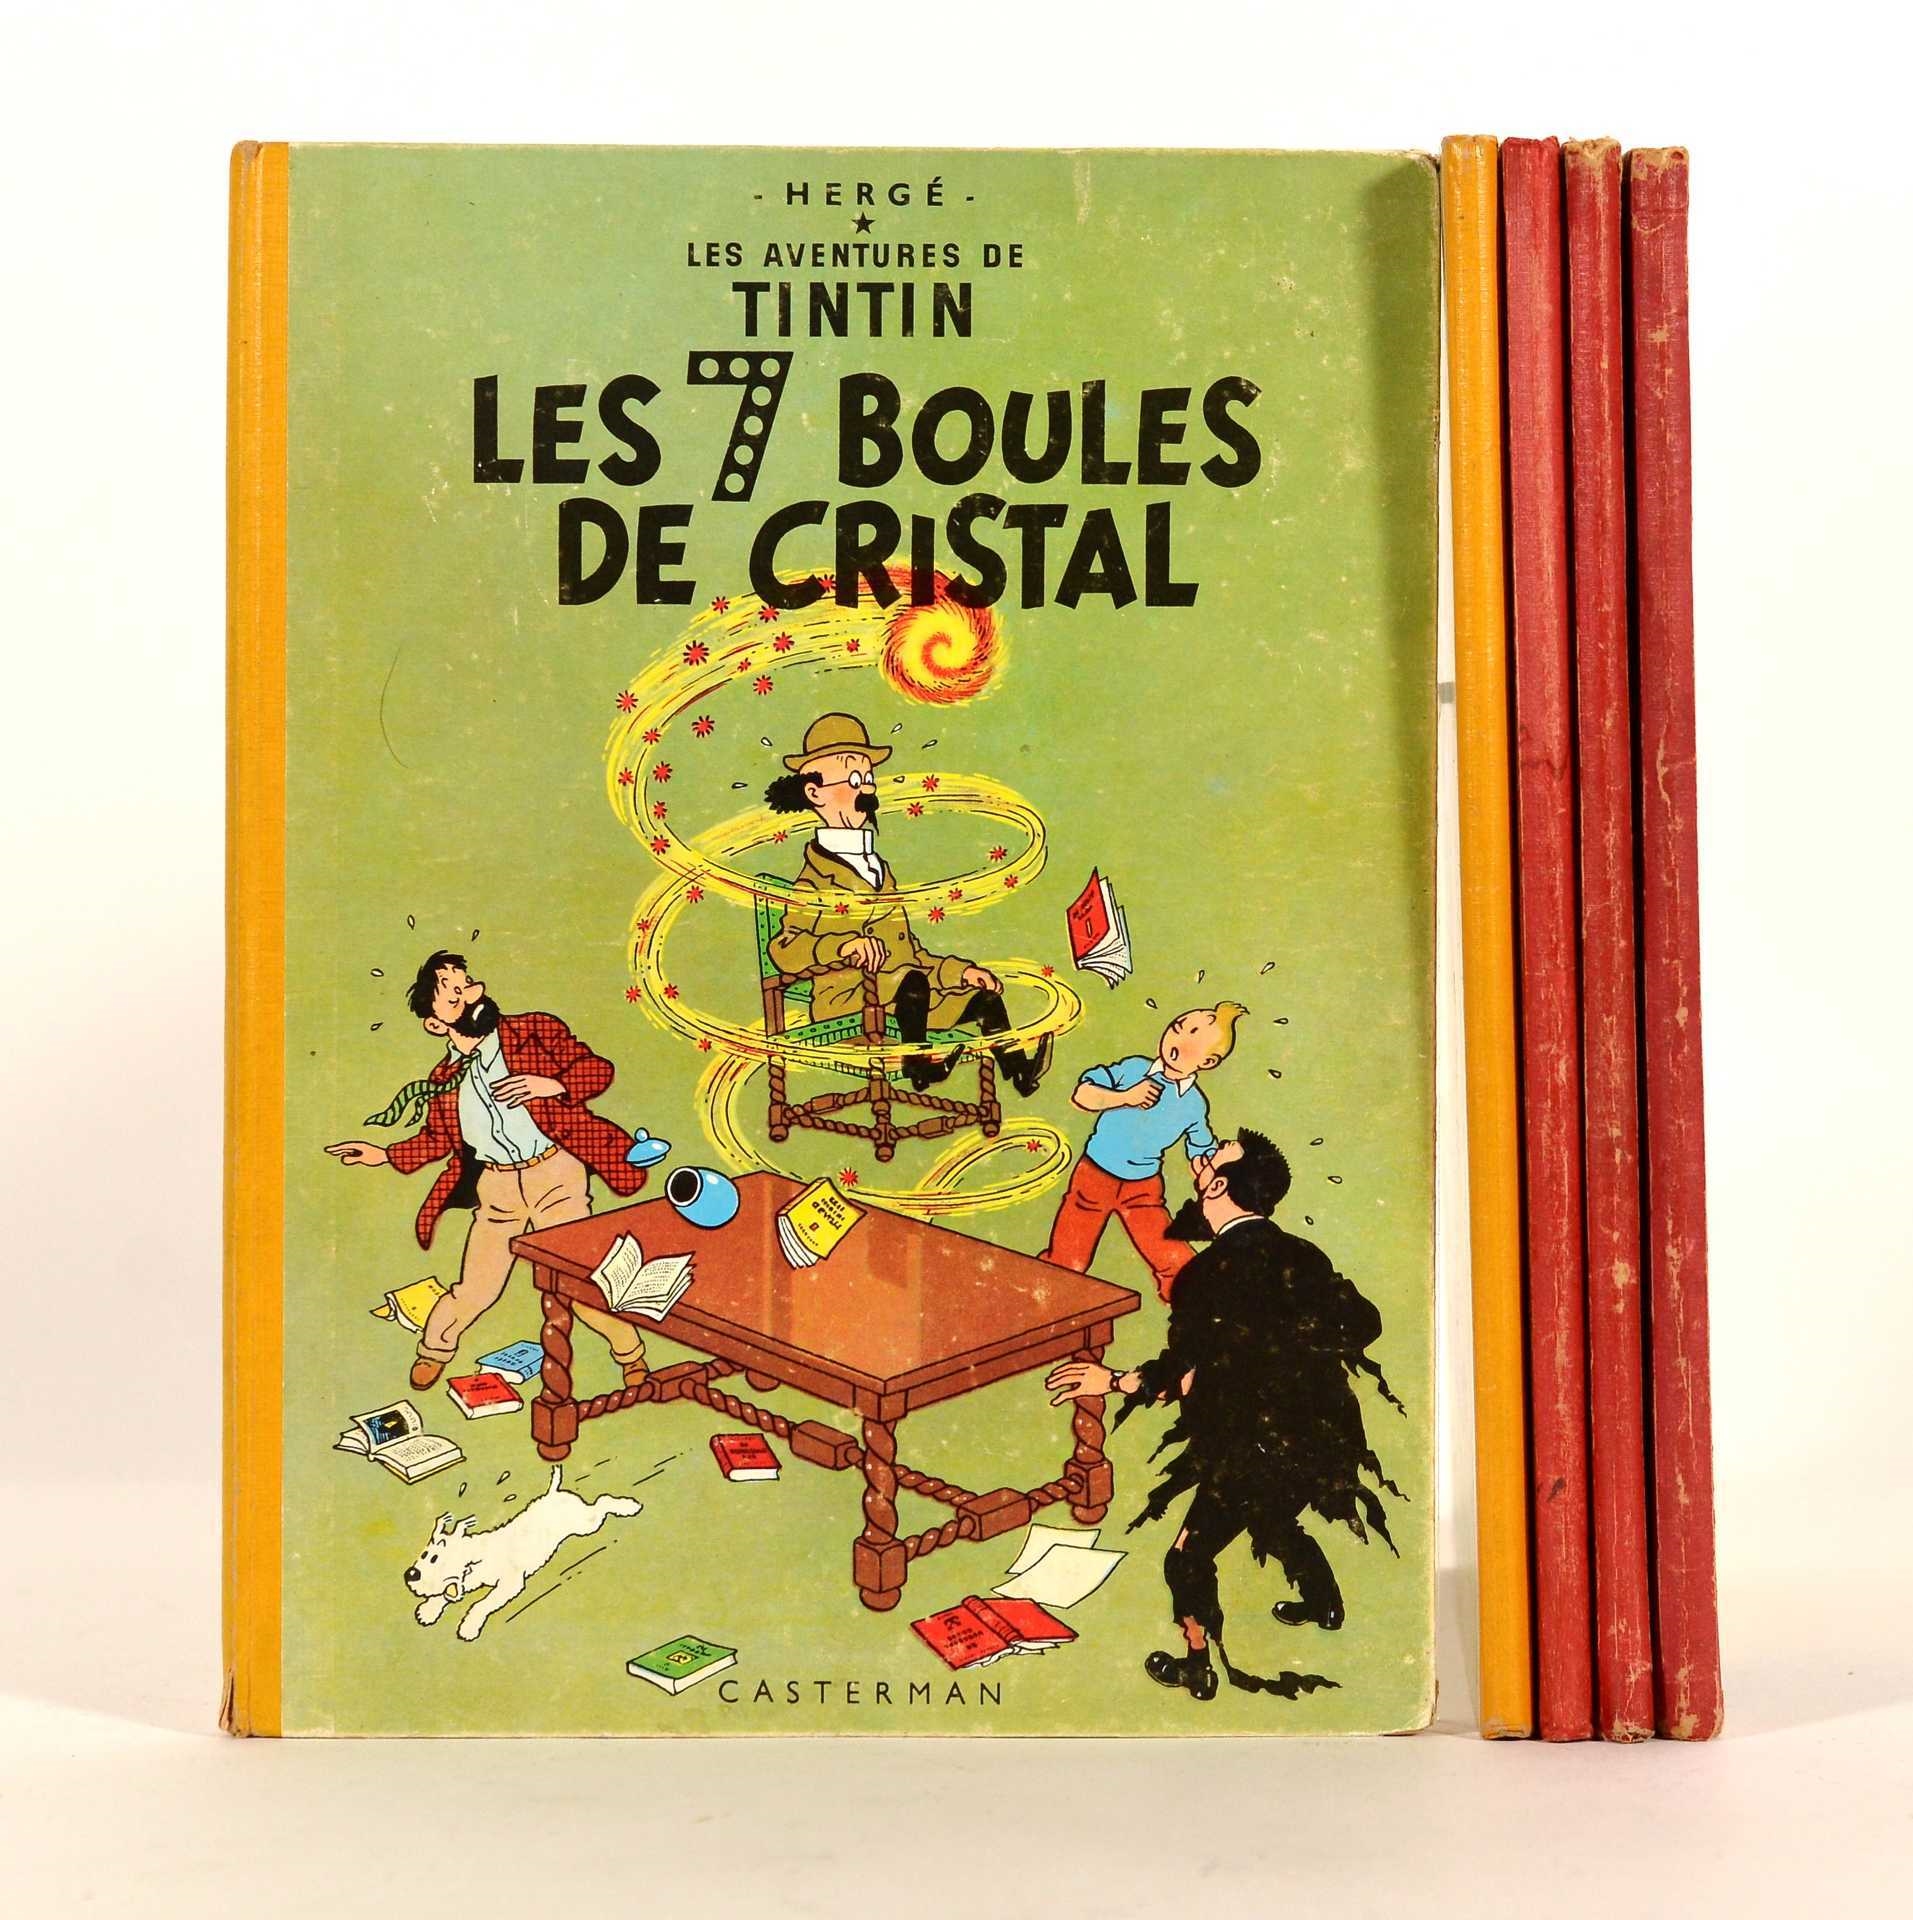 Lot de 50 figurines  Tintin la collection officielle édition Moulinsart  et TF1 vers 2011. Compris les livrets et certofocats. Polyrésine. H 12 cm  en